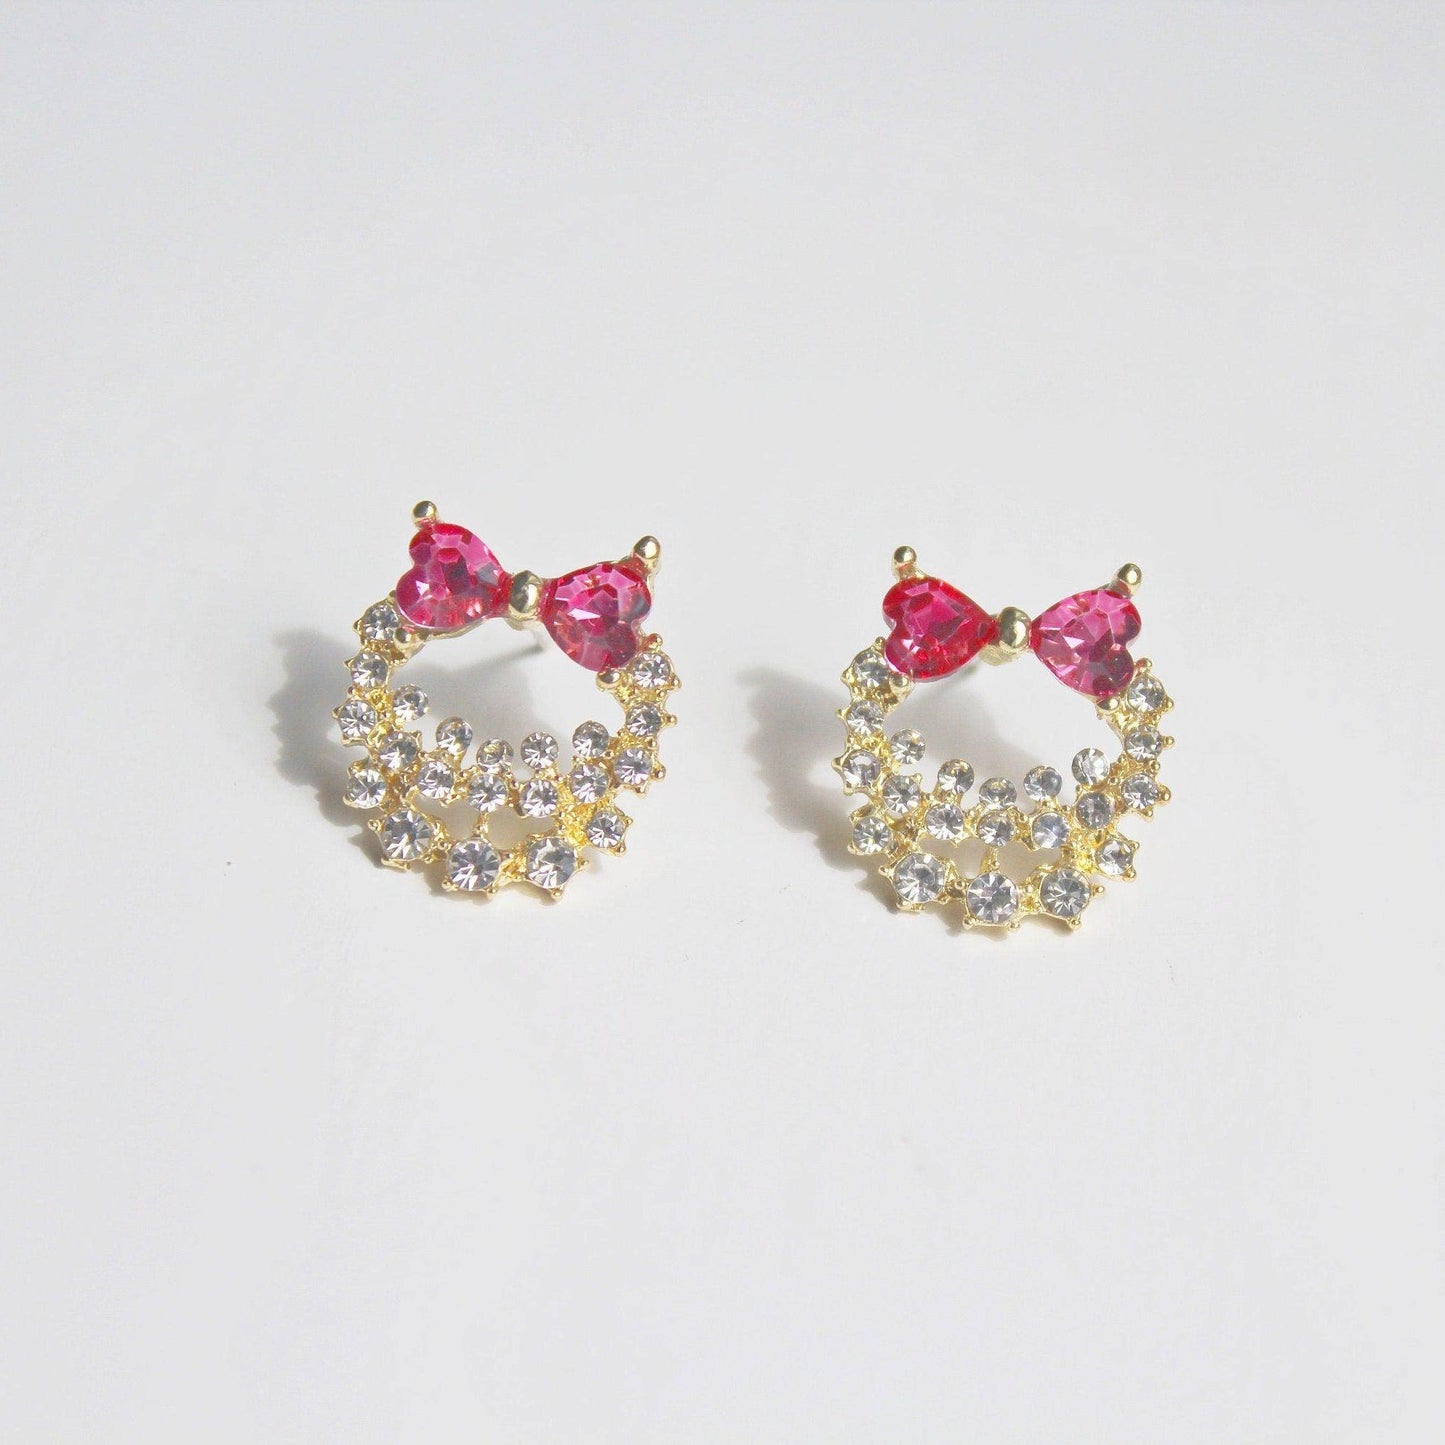 Bow Tie Wreath Earrings - Pink Heart Shape Crystal Sterling Silver Stud Earrings-Ninaouity